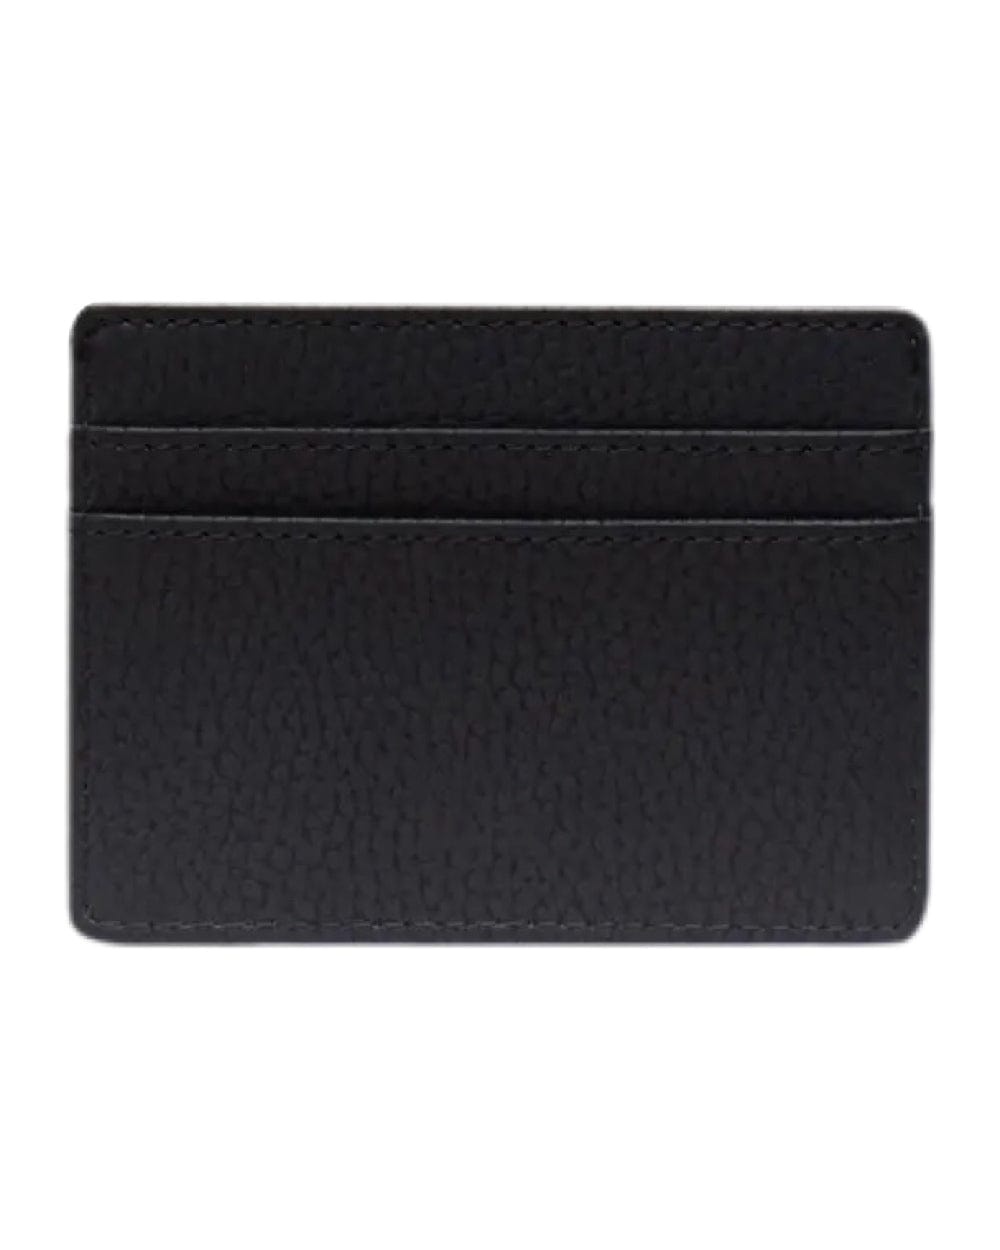 Herschel Charlie Cardholder Vegan Leather - Black - 11147-00001-OS - 828432554942